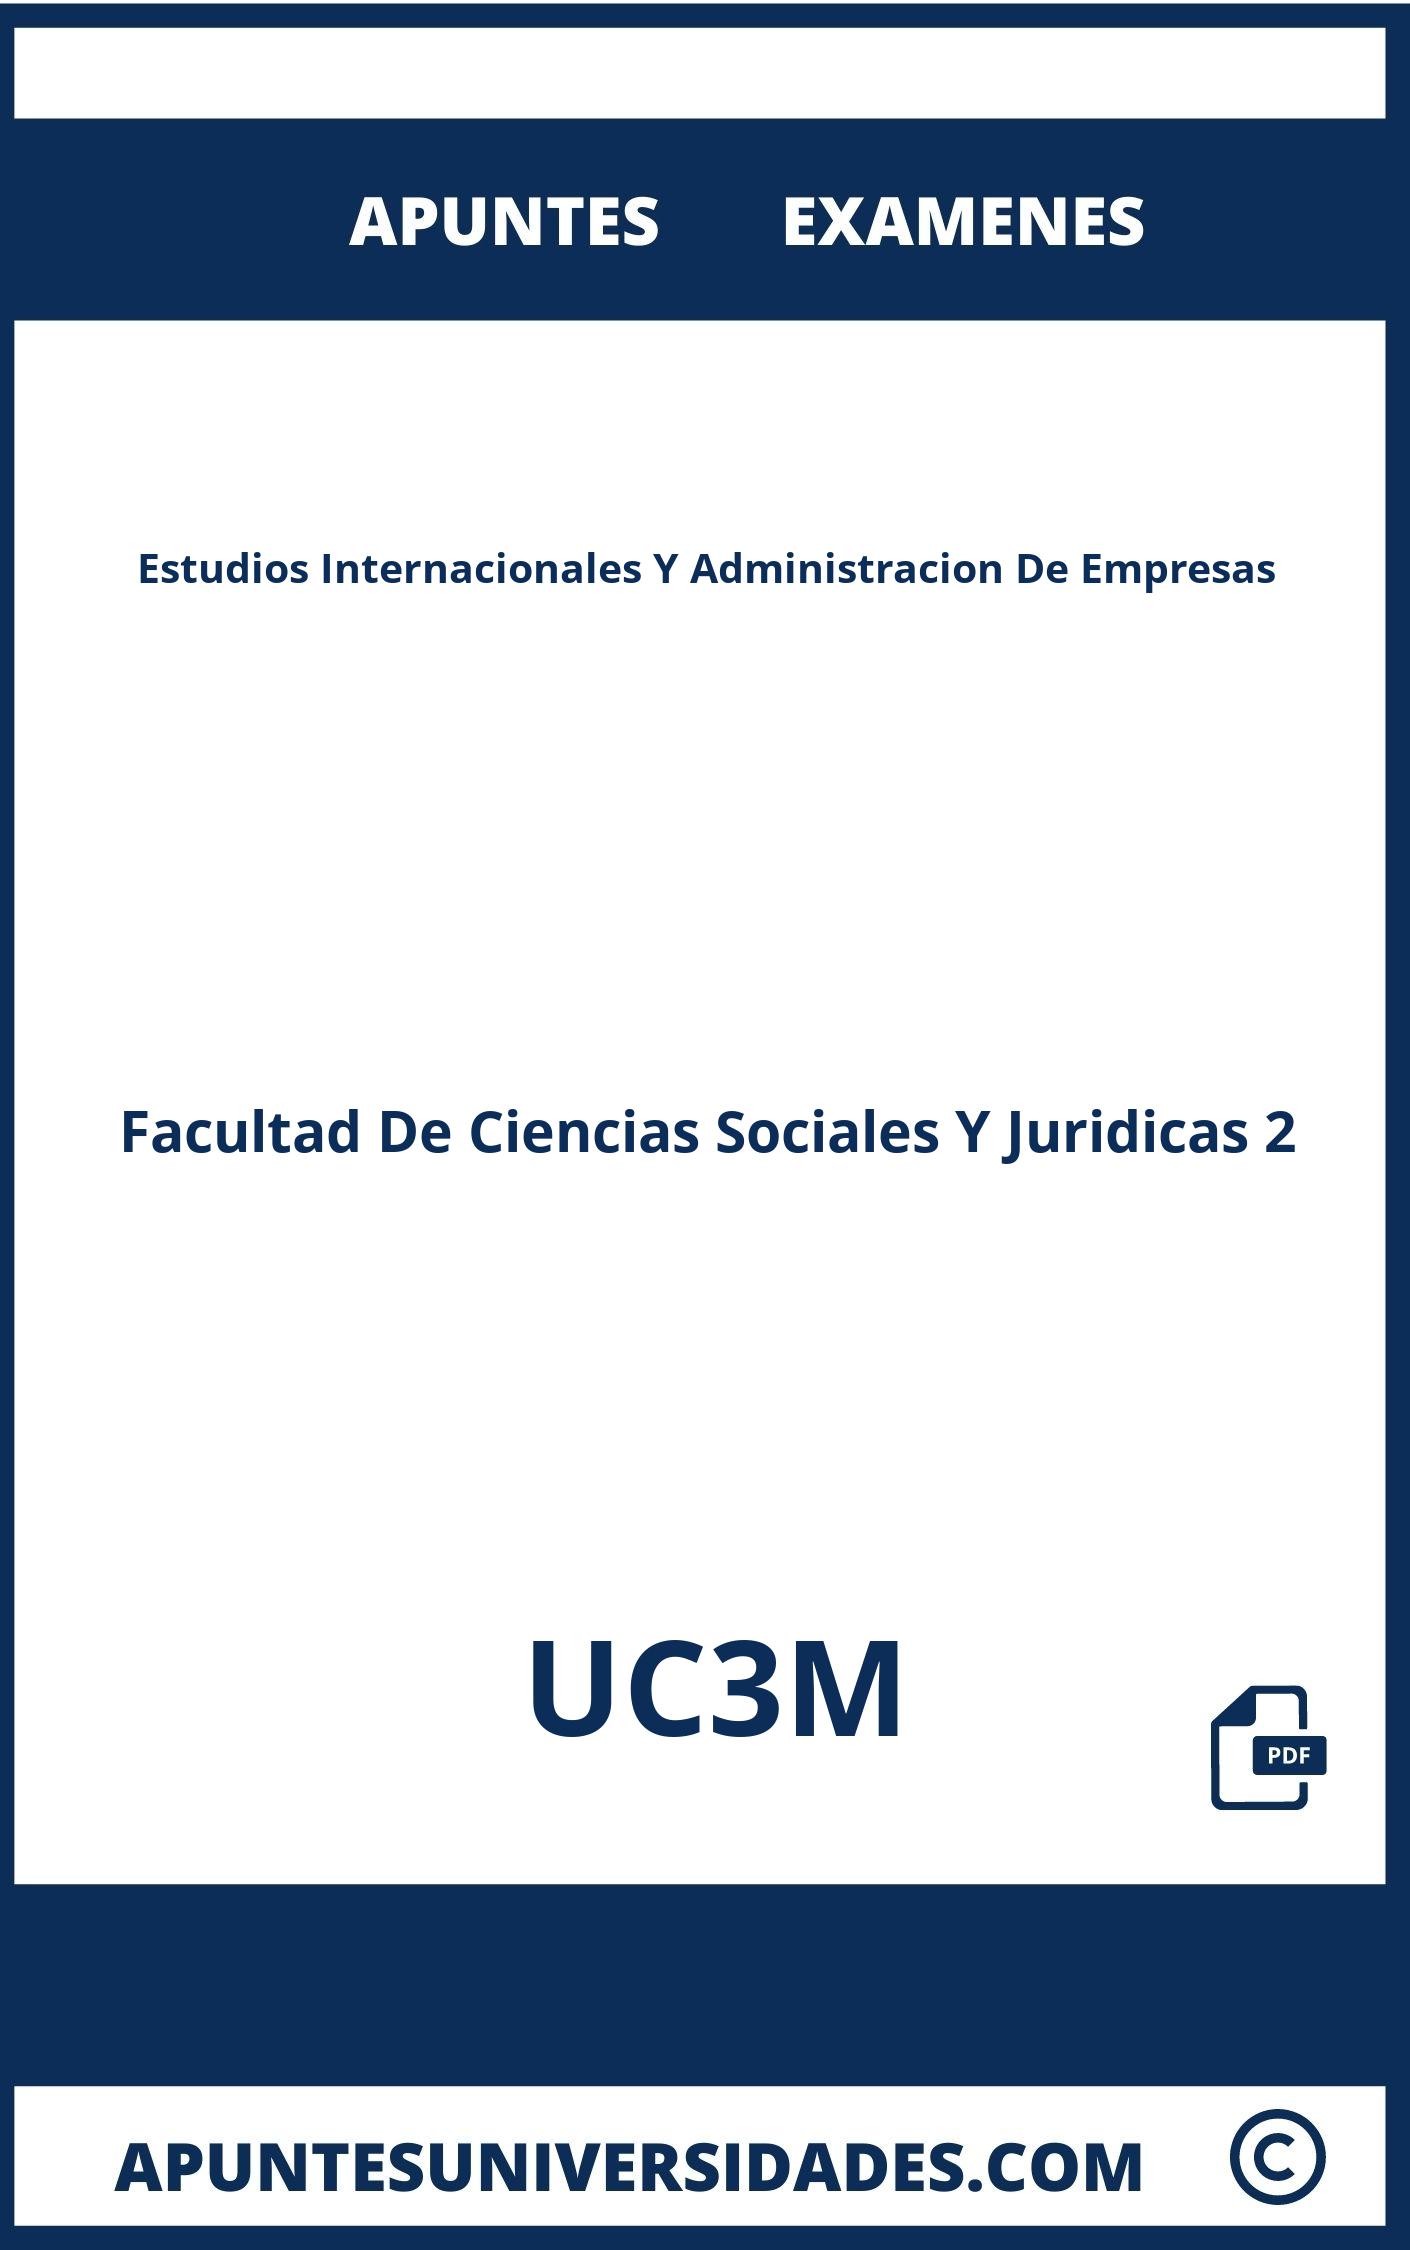 Examenes Apuntes Estudios Internacionales Y Administracion De Empresas UC3M